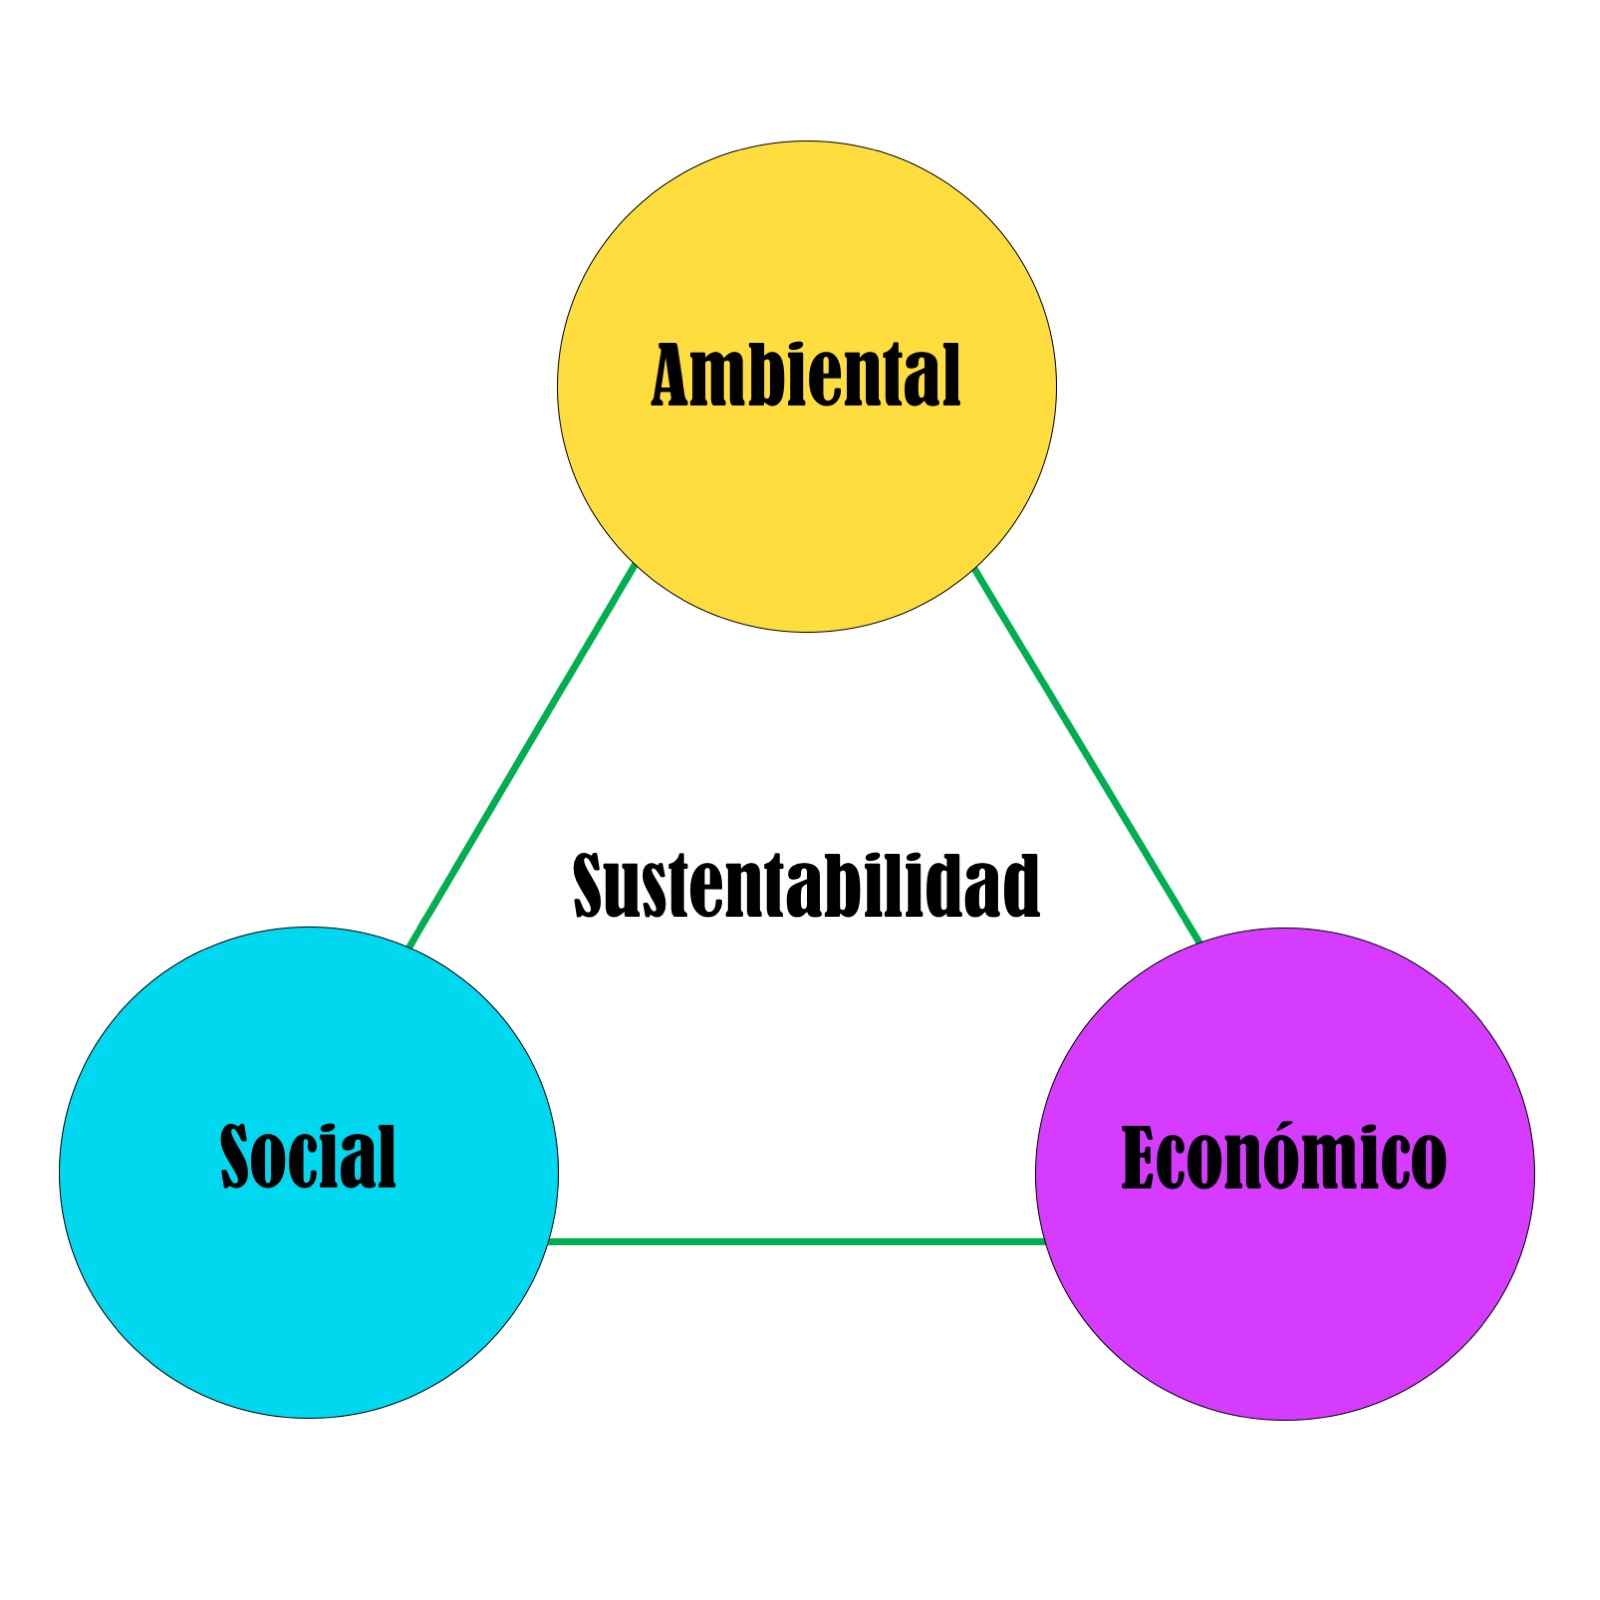 Imagen 1. Triángulo de sustentabilidad. Elaboración propia